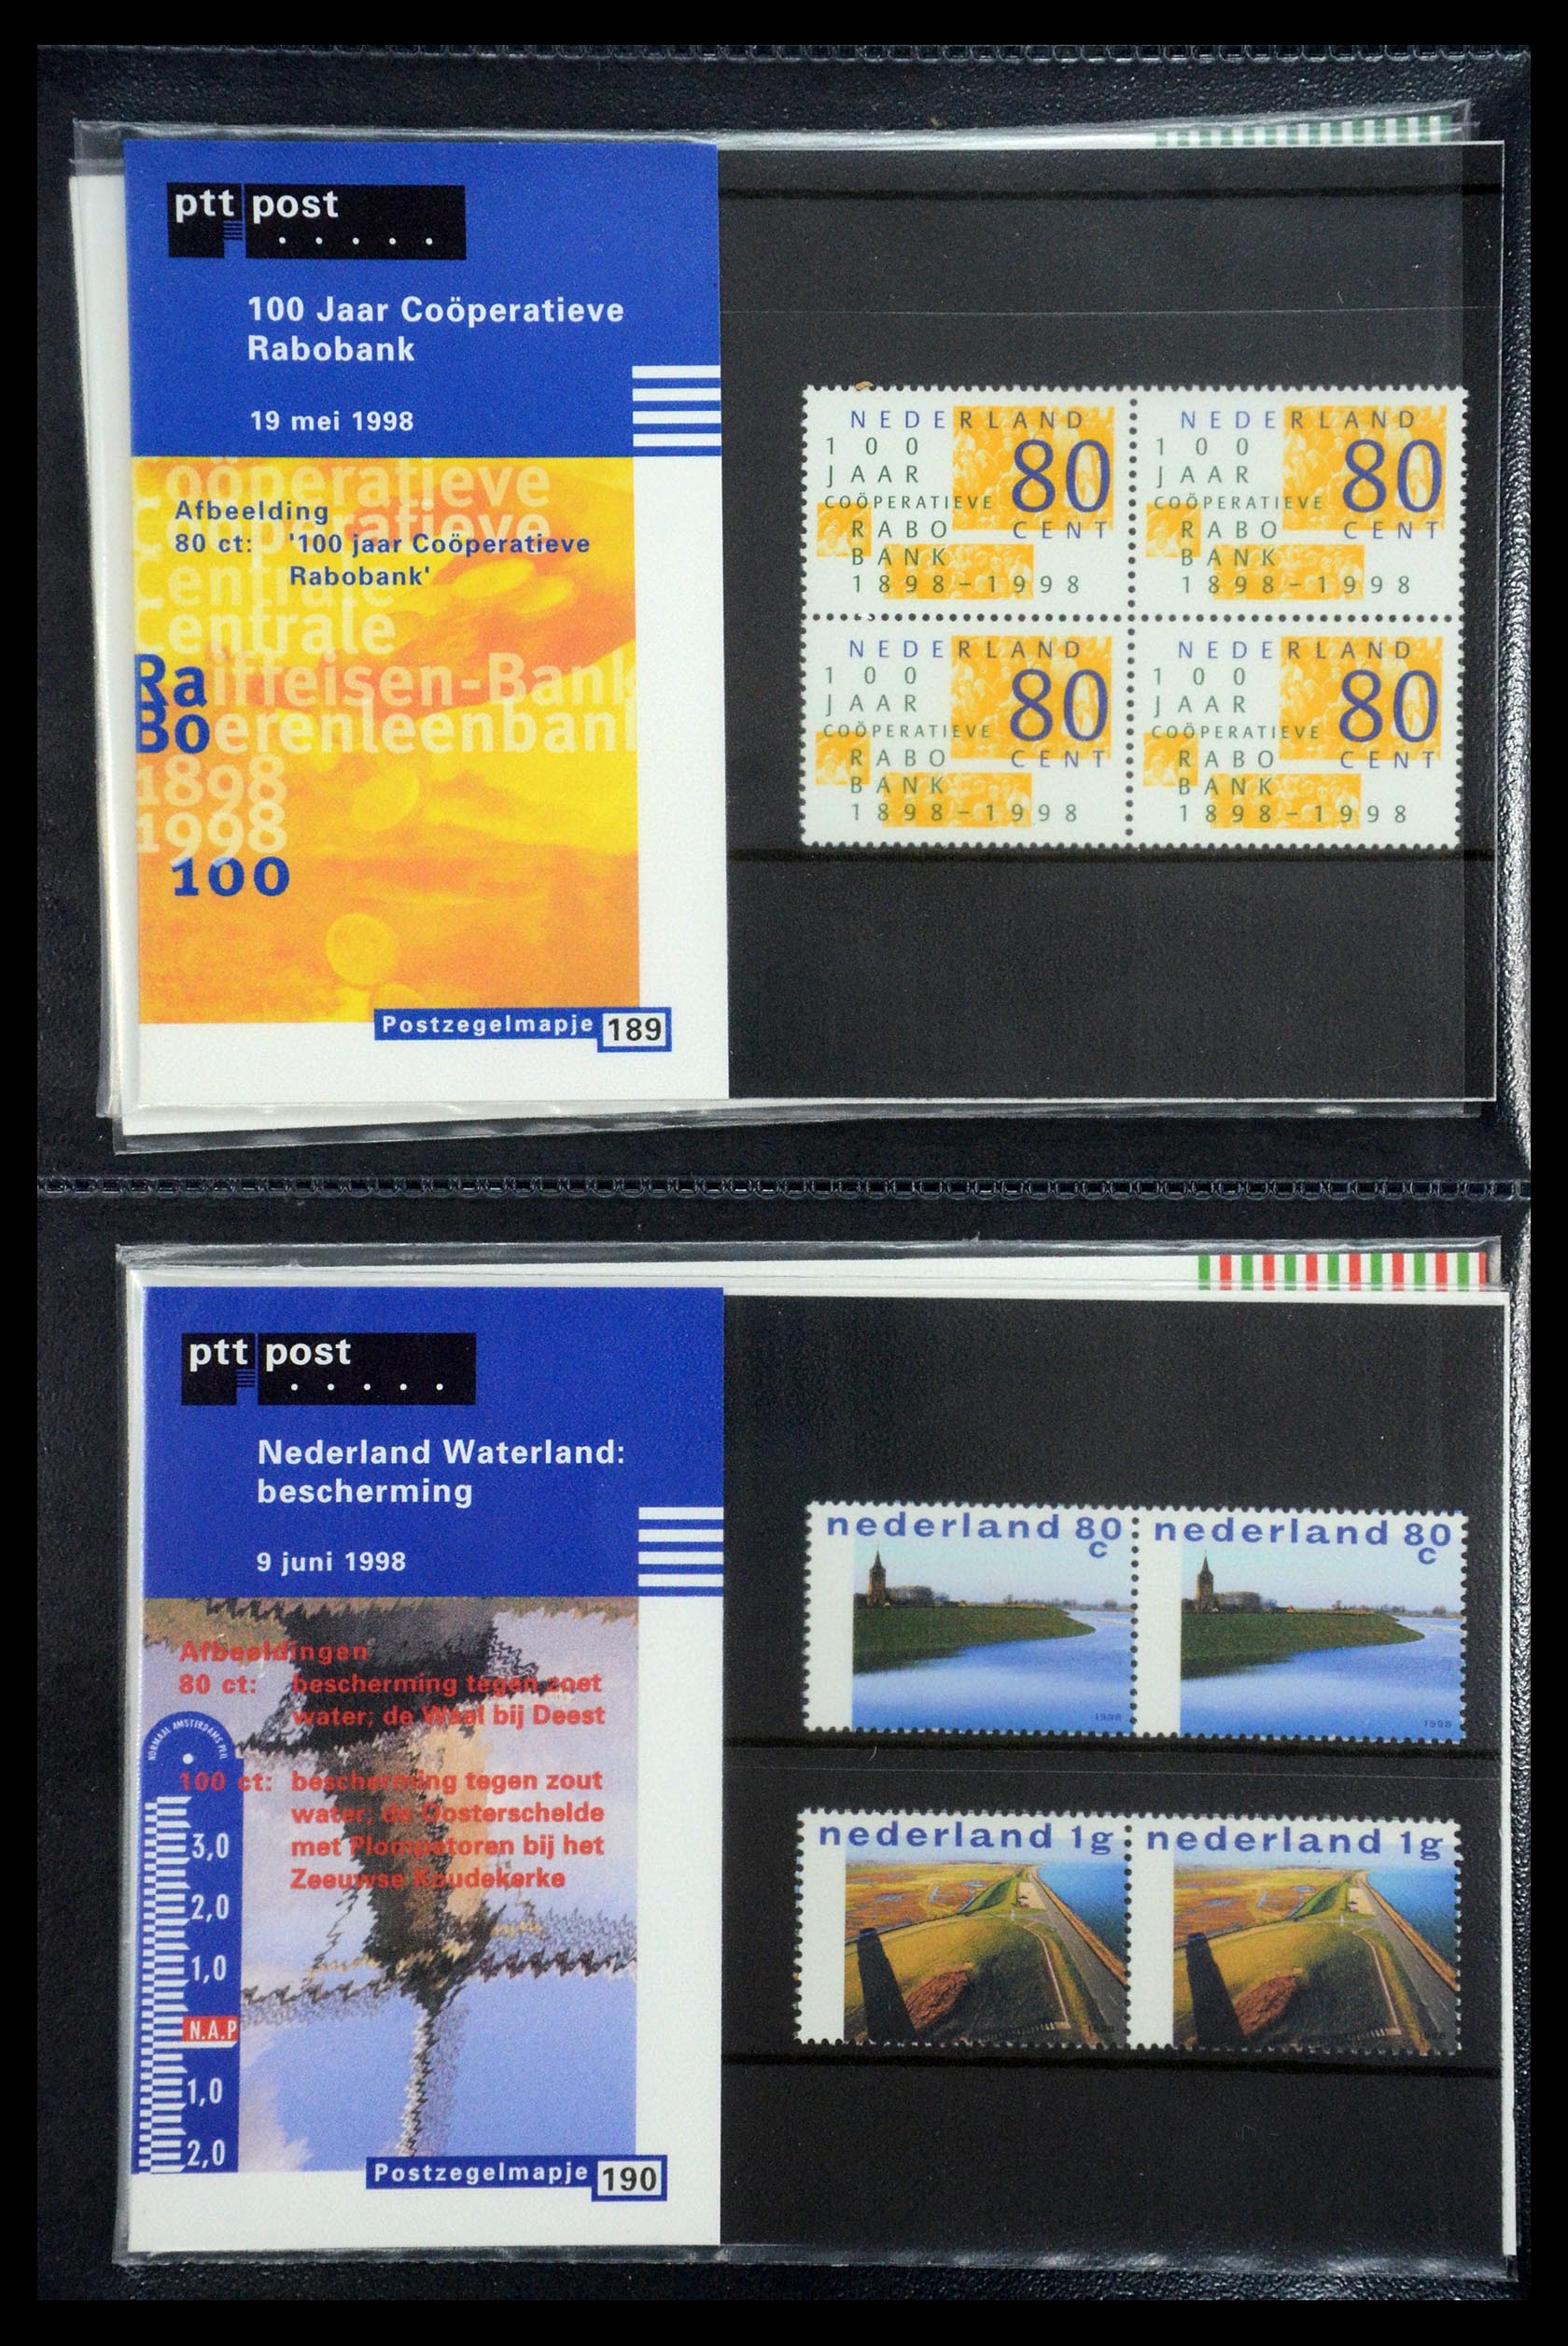 35187 097 - Stamp Collection 35187 Netherlands PTT presentation packs 1982-2019!